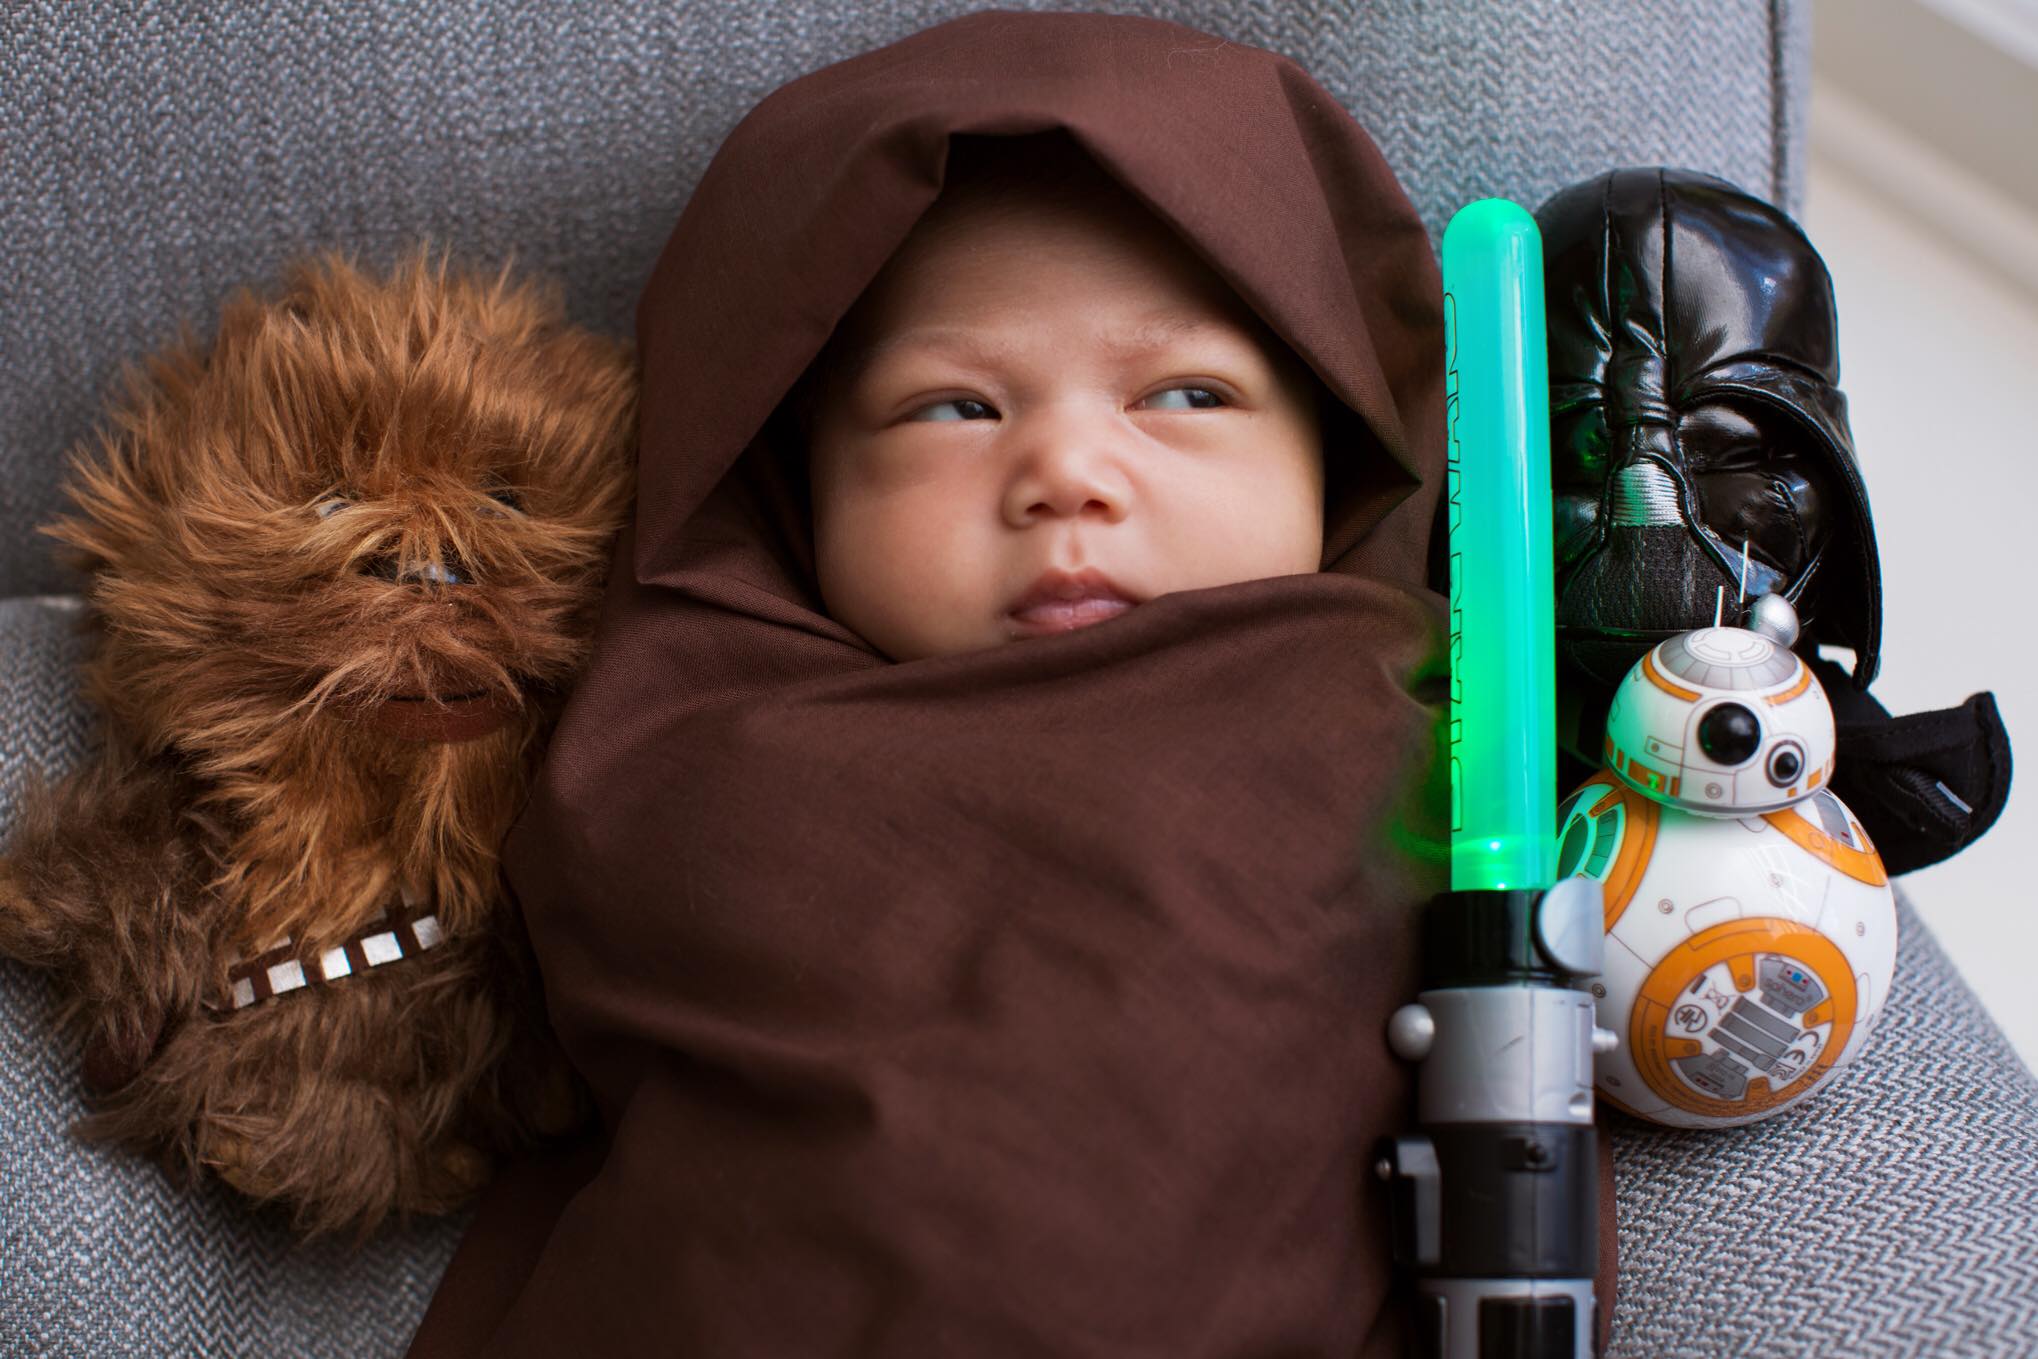 La piccola Max Zuckerberg travestita da maestro Jedi.